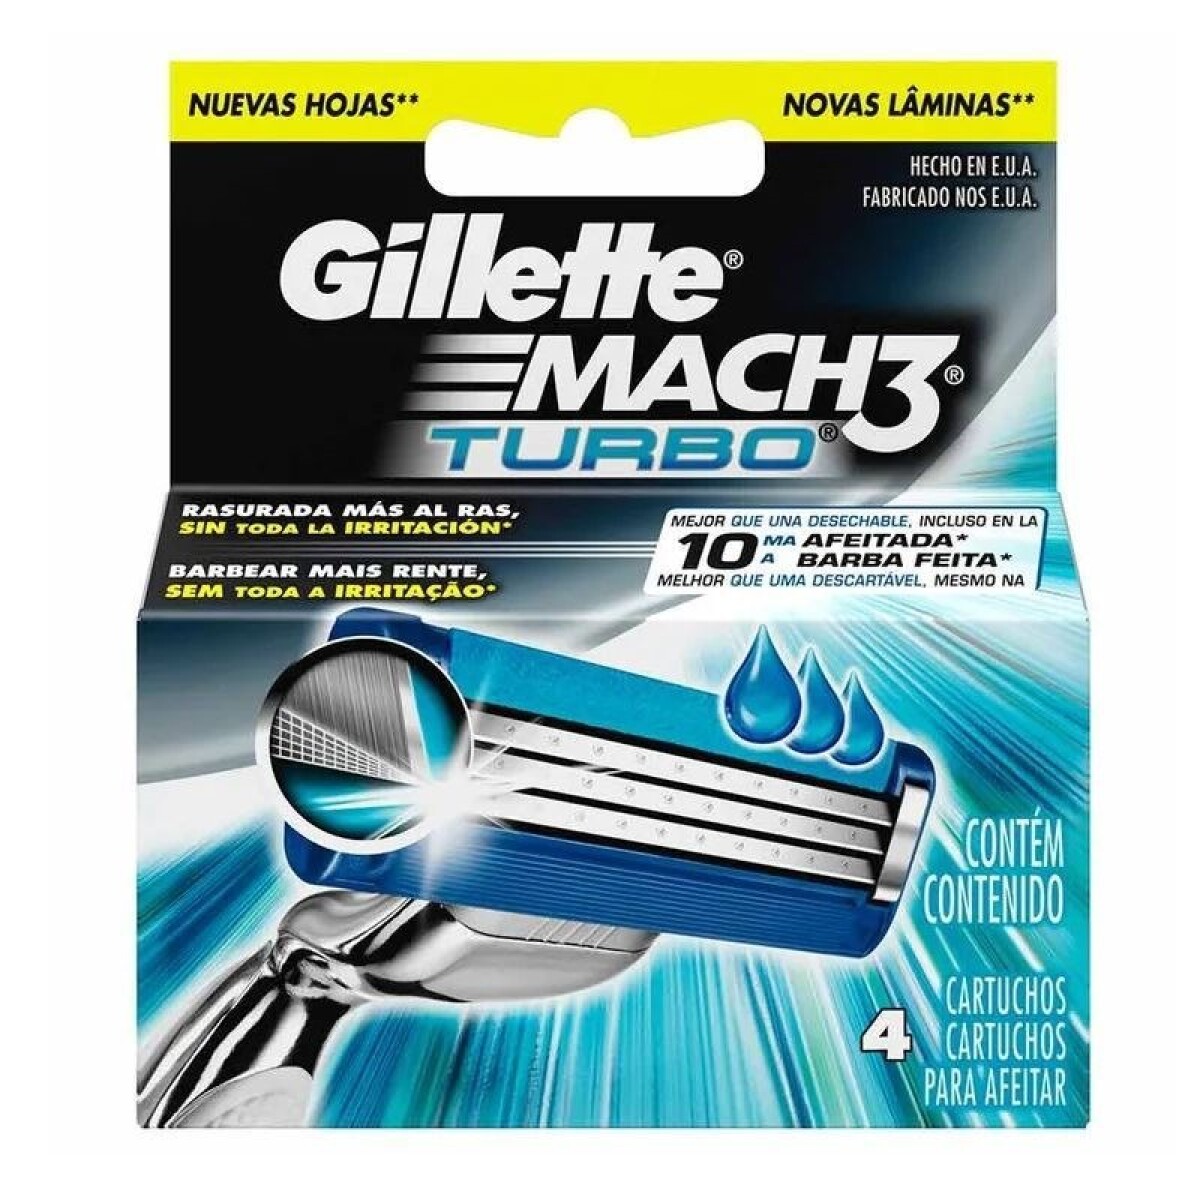 Cartuchos para Afeitar Gillette Mach 3 Turbo - Repuesto X4 